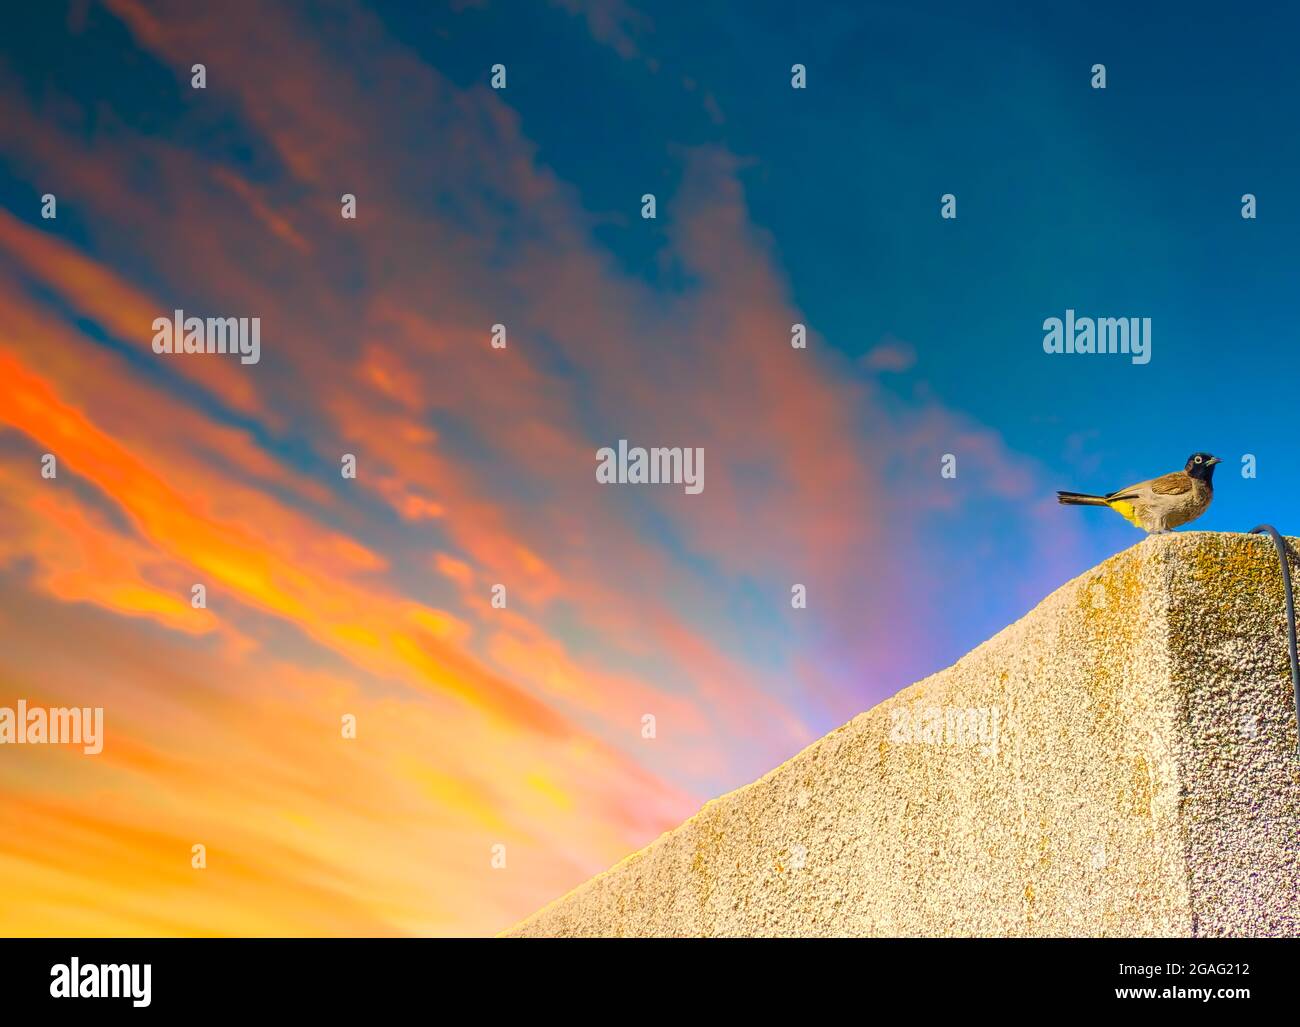 Ein wunderschöner, gelb belüfteter Bulbul oder pycnonotus xanthopygos Vogel, der auf einem Holzstock auf dem Balkon steht Stockfoto